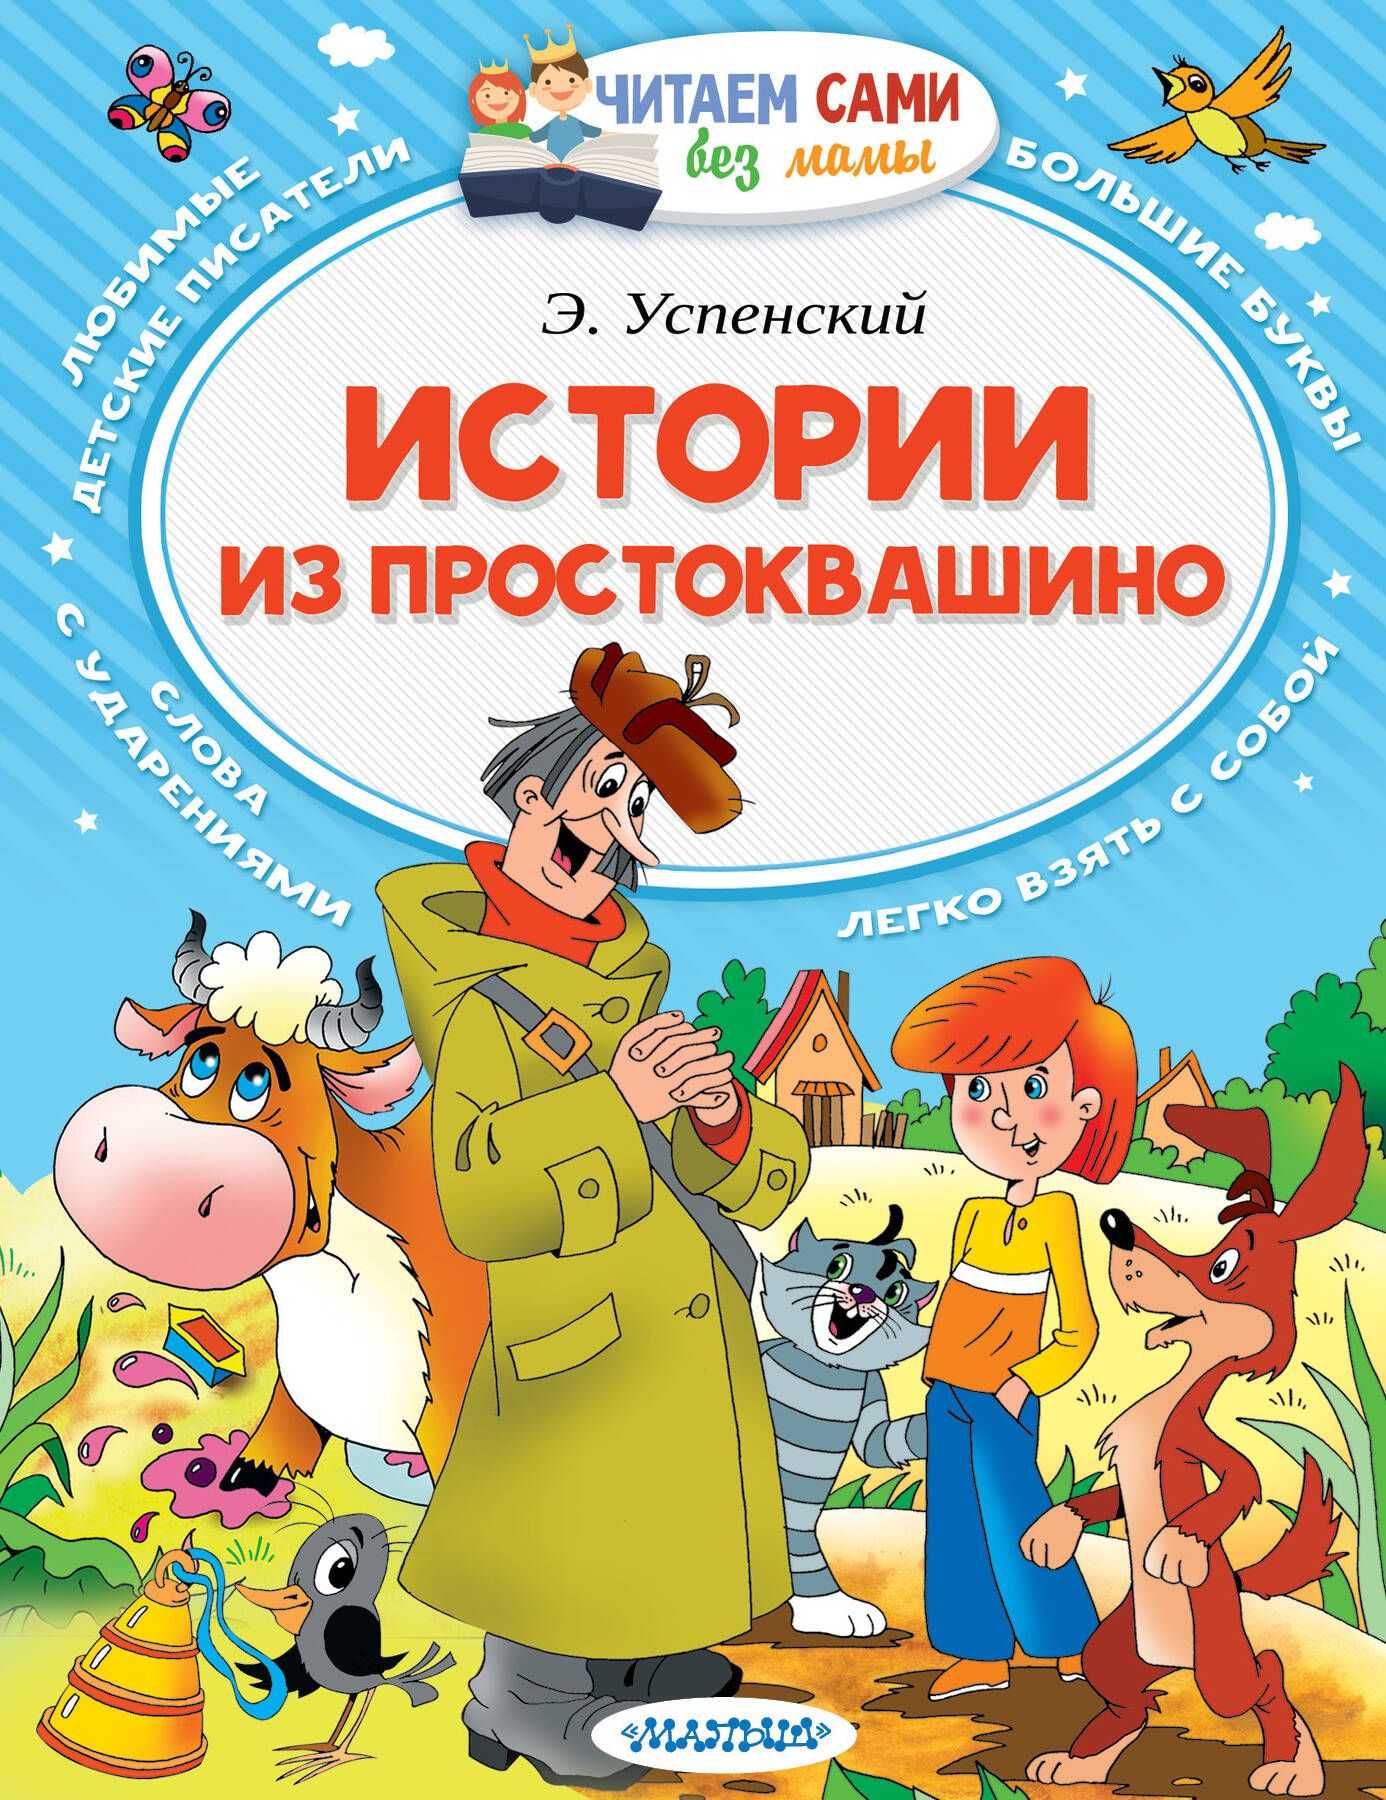 Читательский дневник «дядя фёдор, пёс и кот» эдуарда успенского